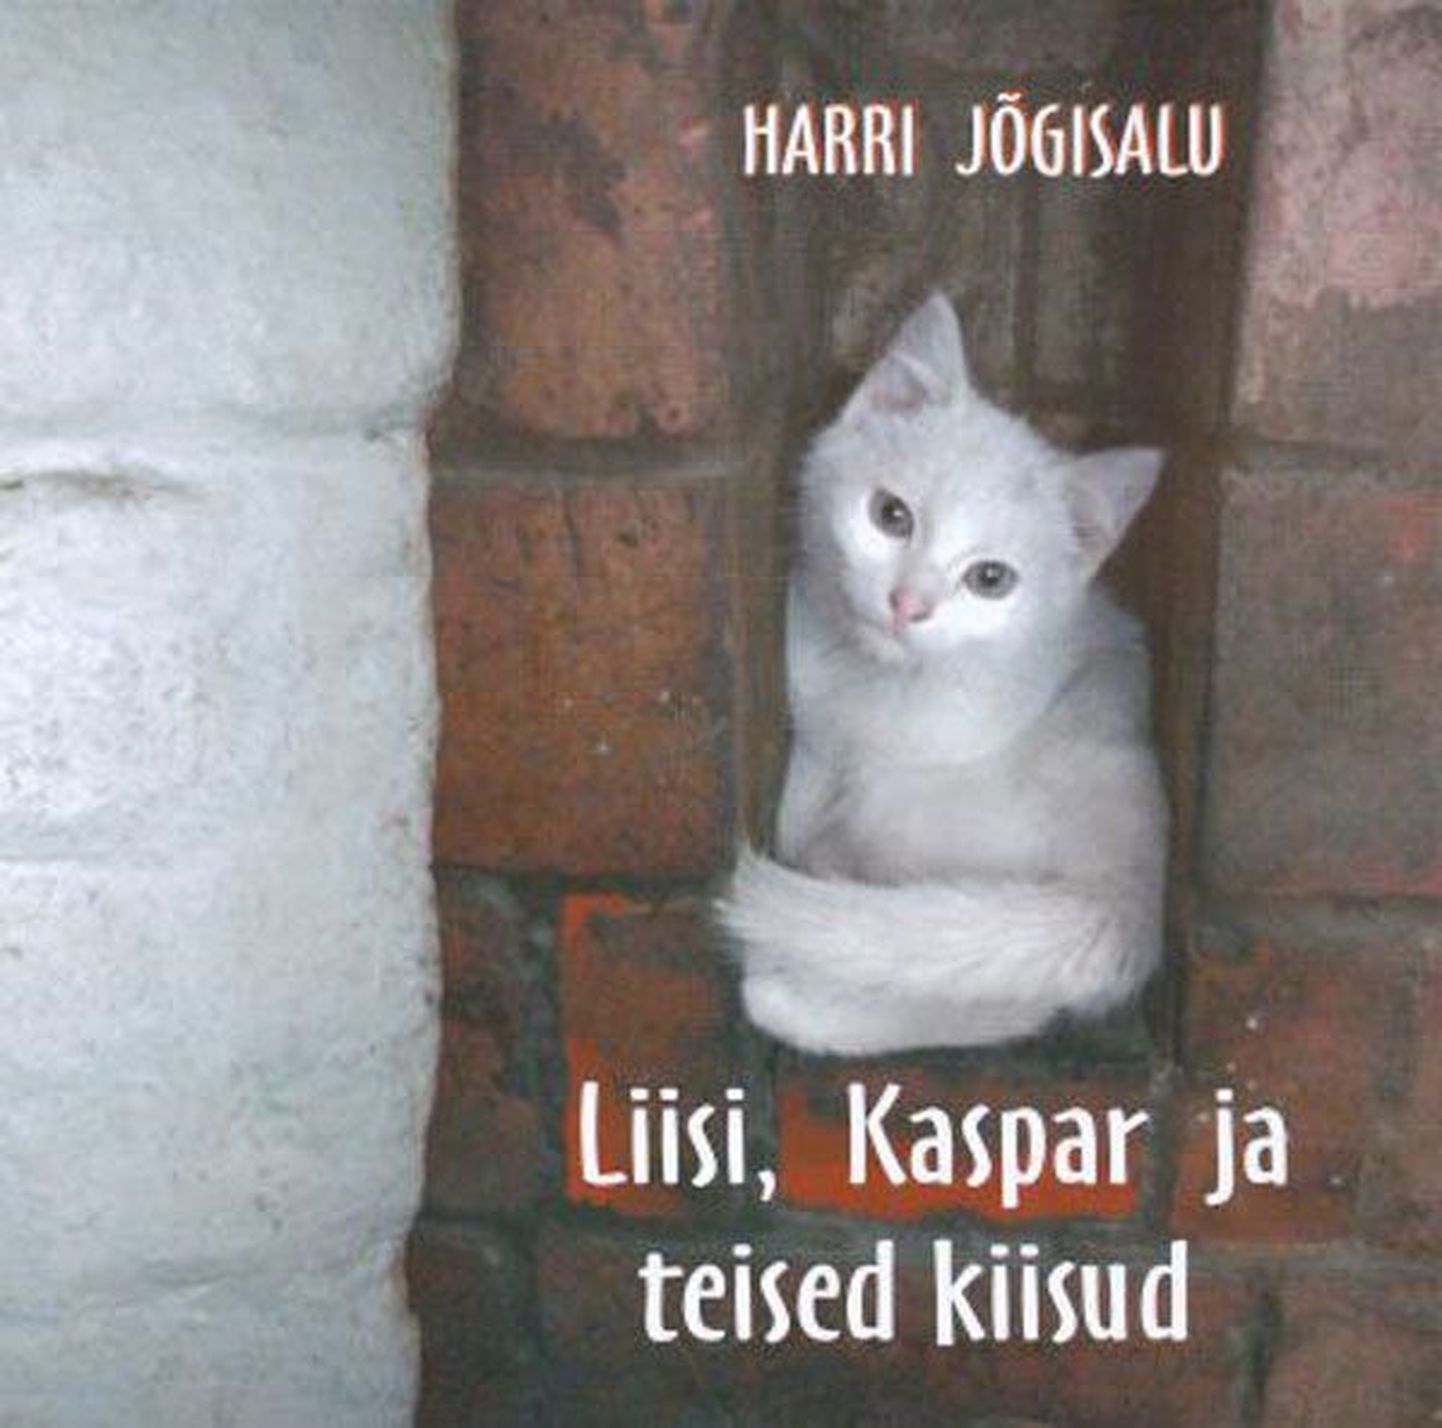 Raamat
Harri Jõgisalu
«Liisi, Kaspar ja teised kiisud» 
illustreeris Endla Tuutma
Faatum, 2013